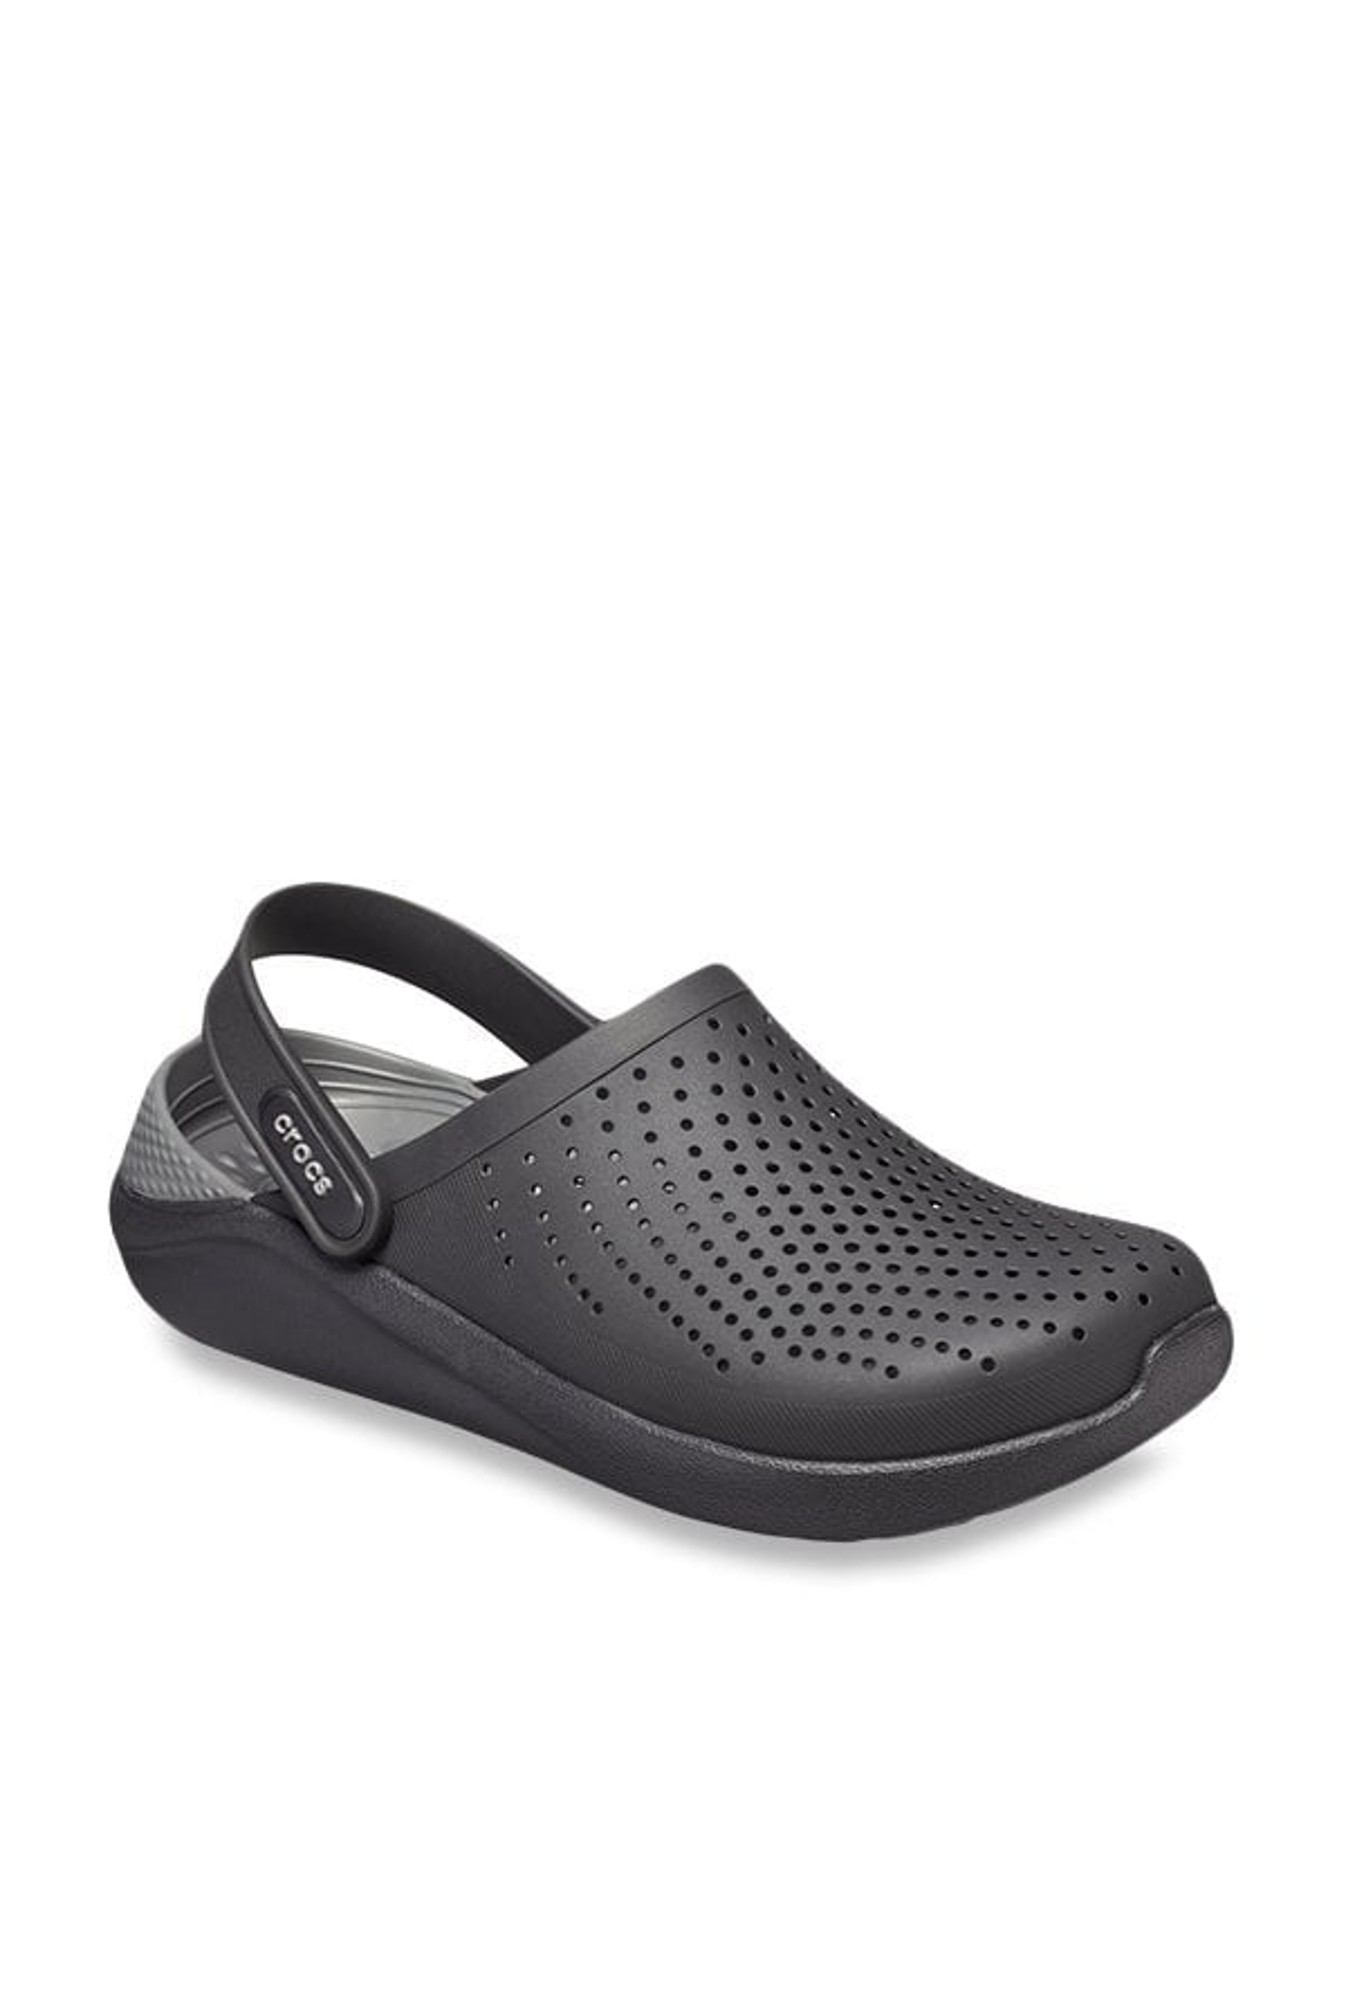 Buy Crocs LiteRide Black \u0026 Slate Grey 